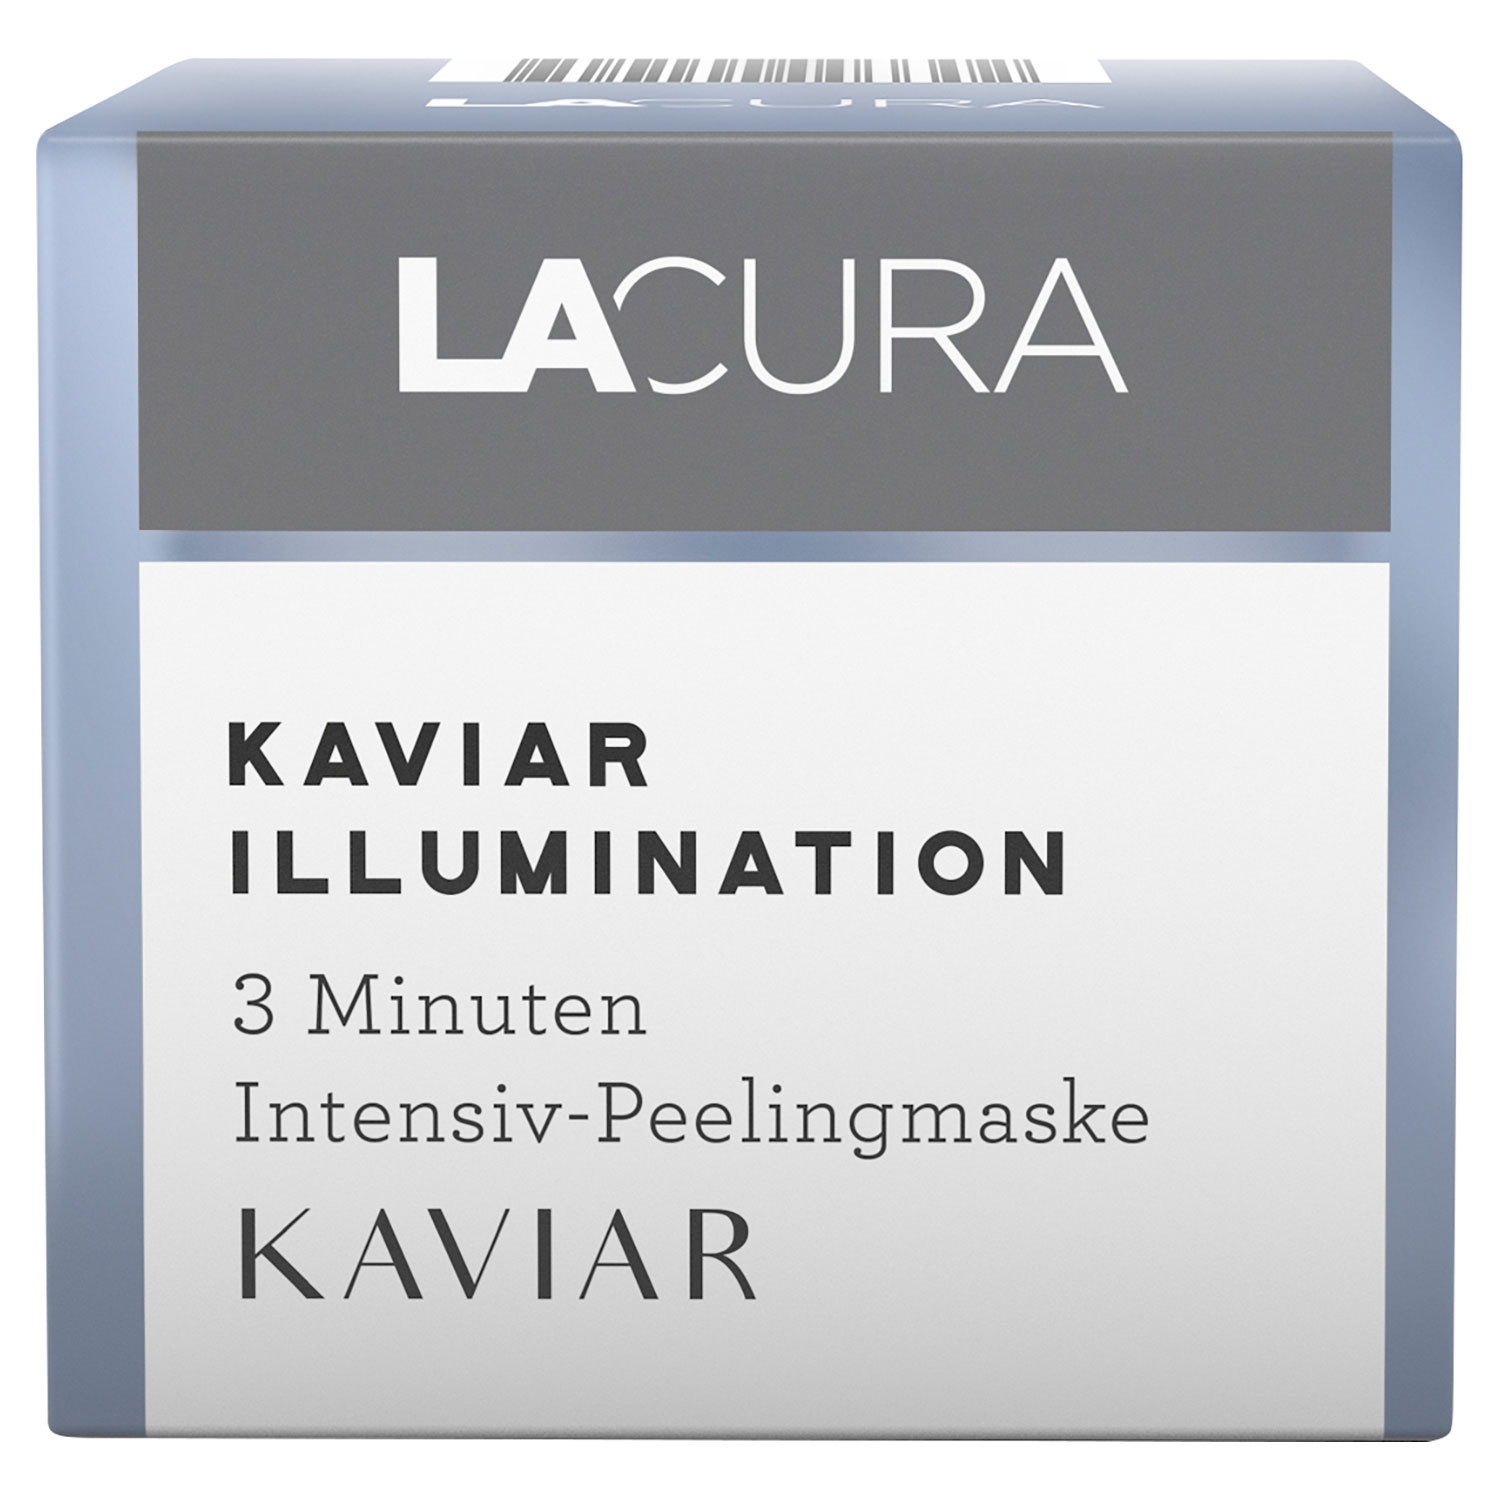 LACURA Kaviar Illumination Gesichtspflege 50 ml